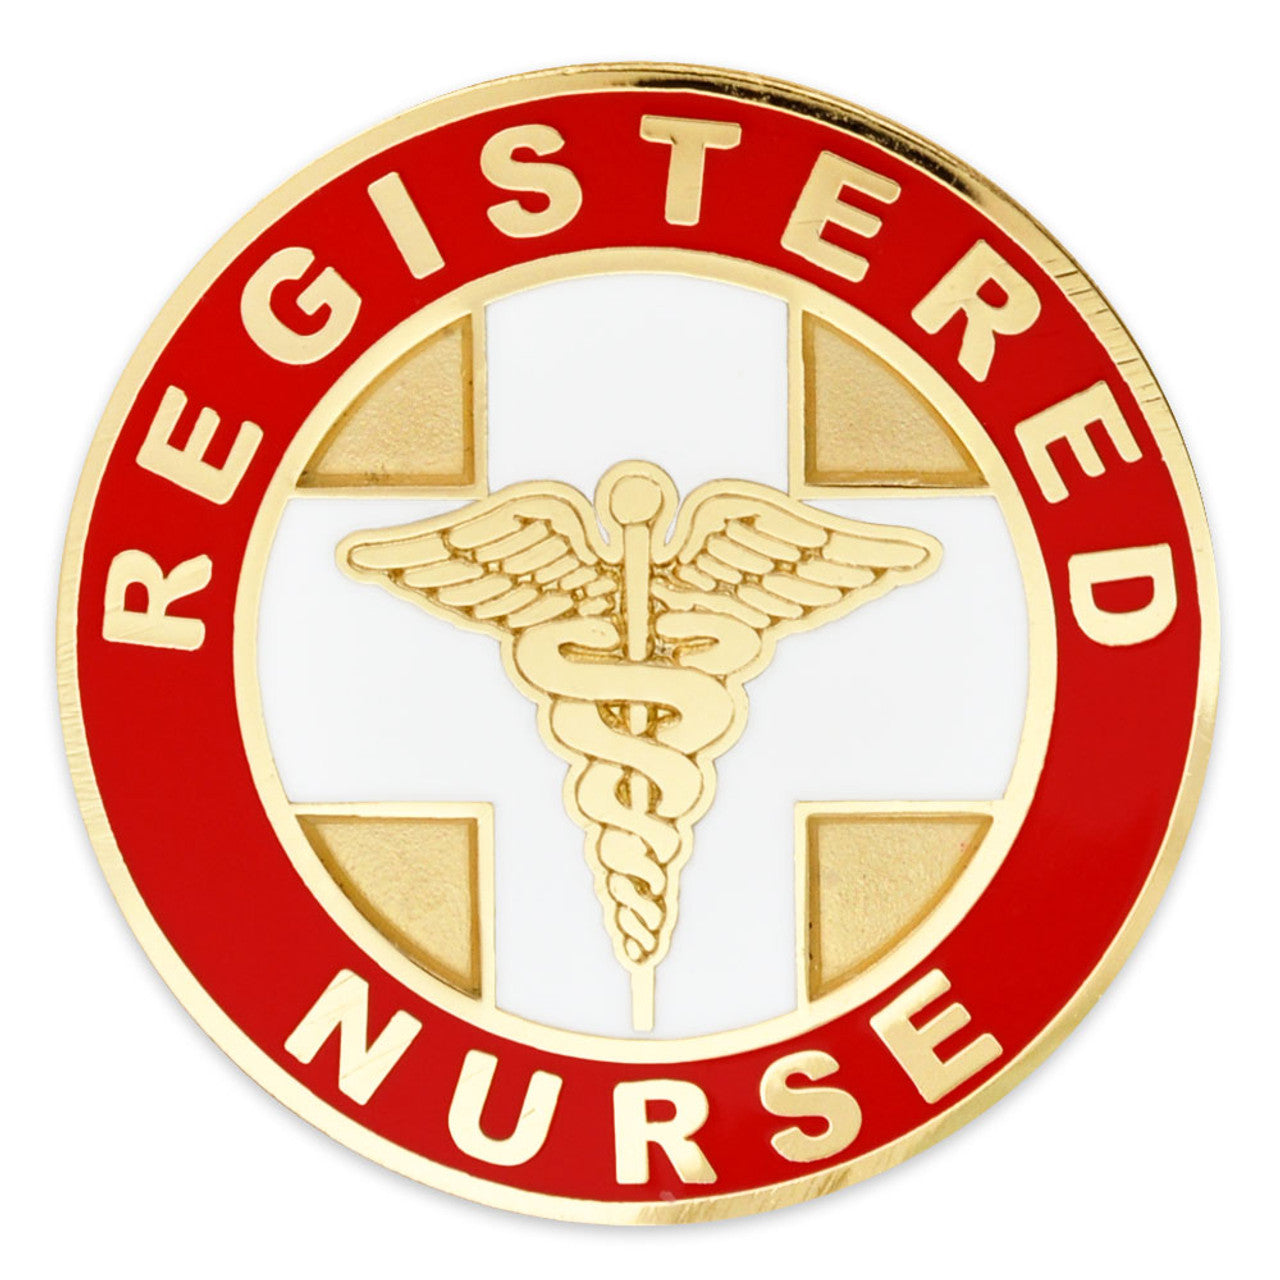 Registered Nurse Pin